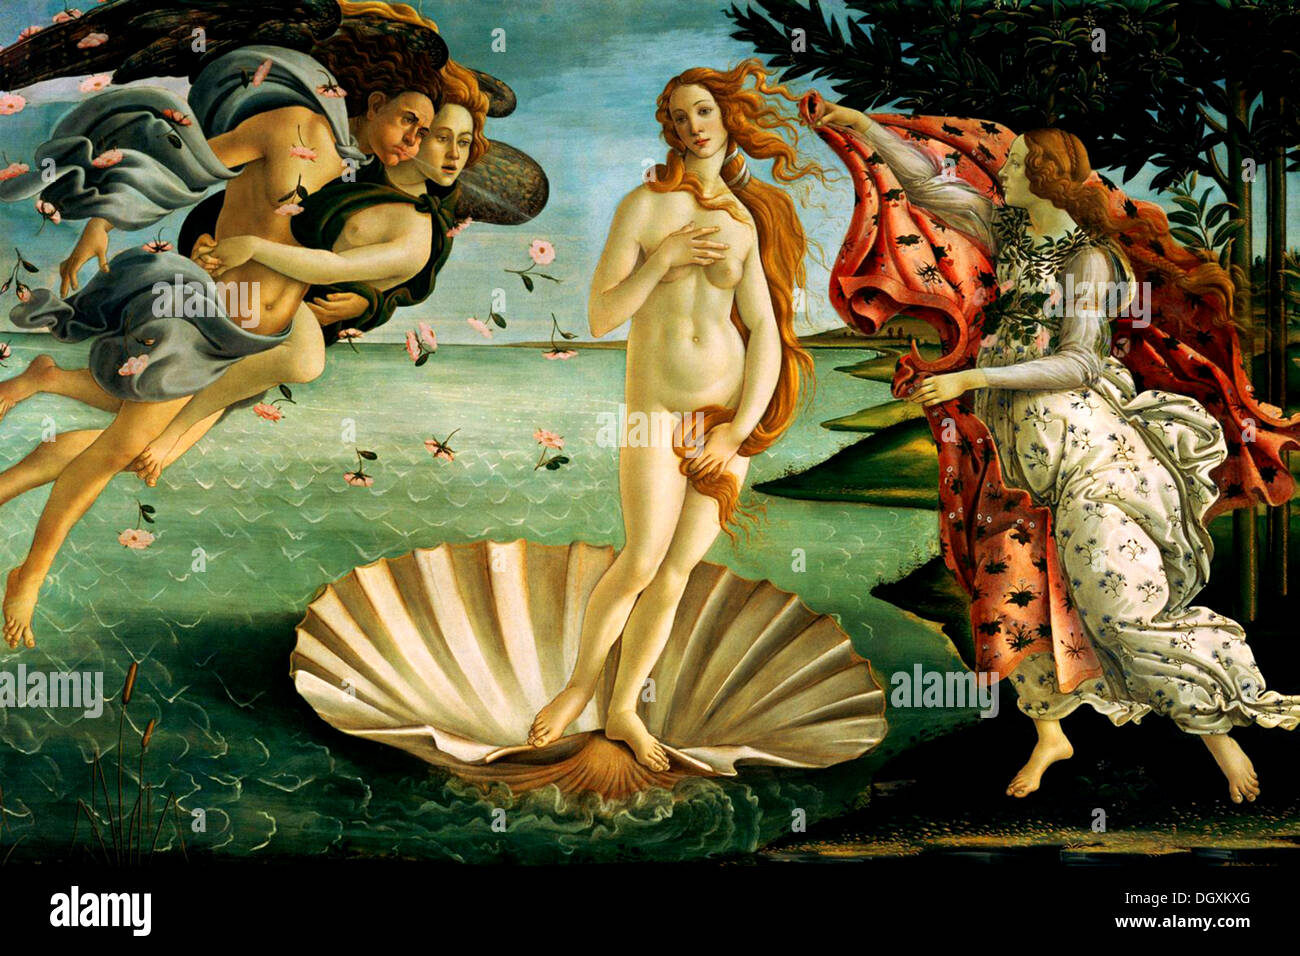 La Naissance de Vénus - par Sandro Botticelli, 1486 - éditorial uniquement. Banque D'Images